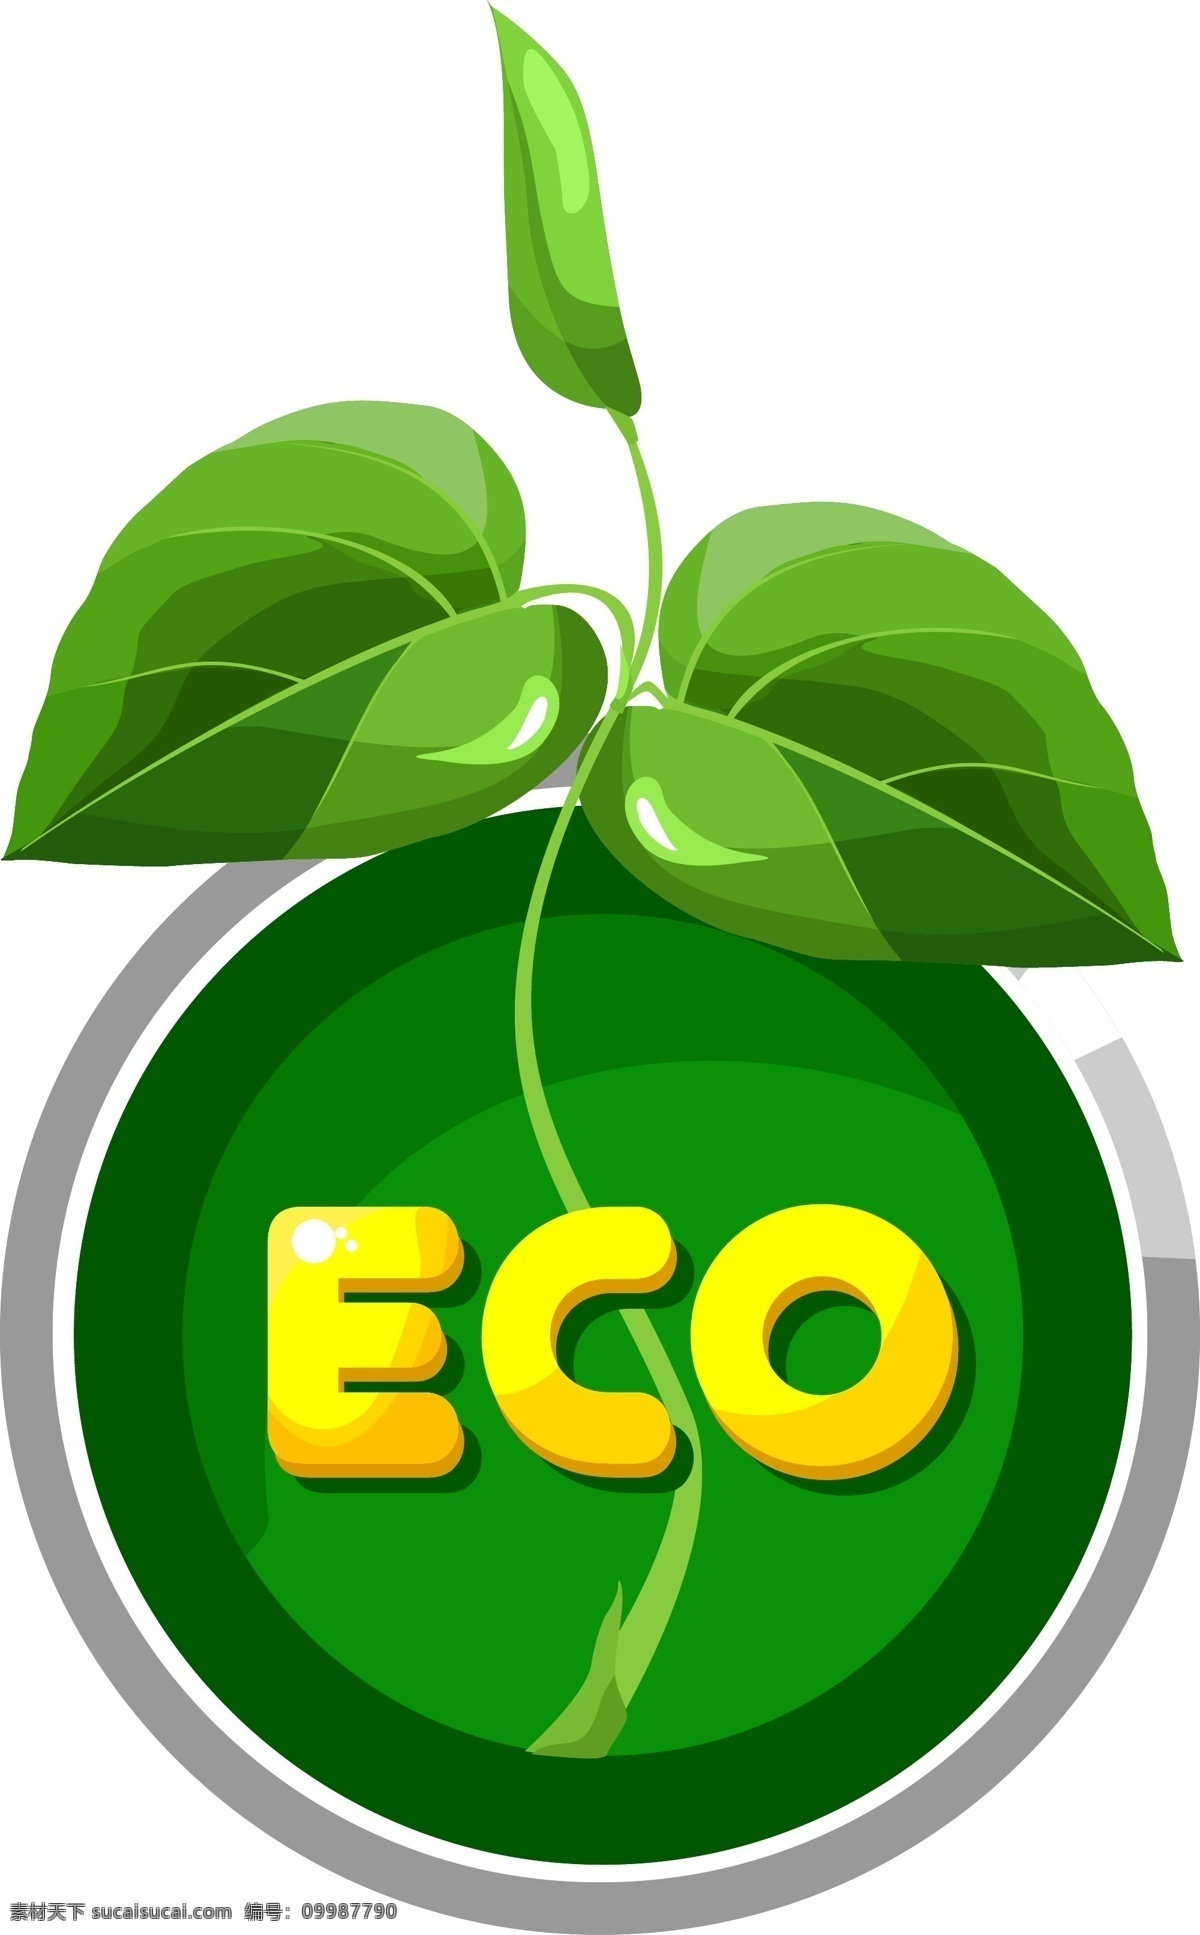 绿色标签贴纸 绿色 环保 生态 标志 标签 贴纸 树叶 吊牌 勋章 商标 质量 装饰 eco 矢量 绿色环保 图标 logo 小图标 标识标志图标